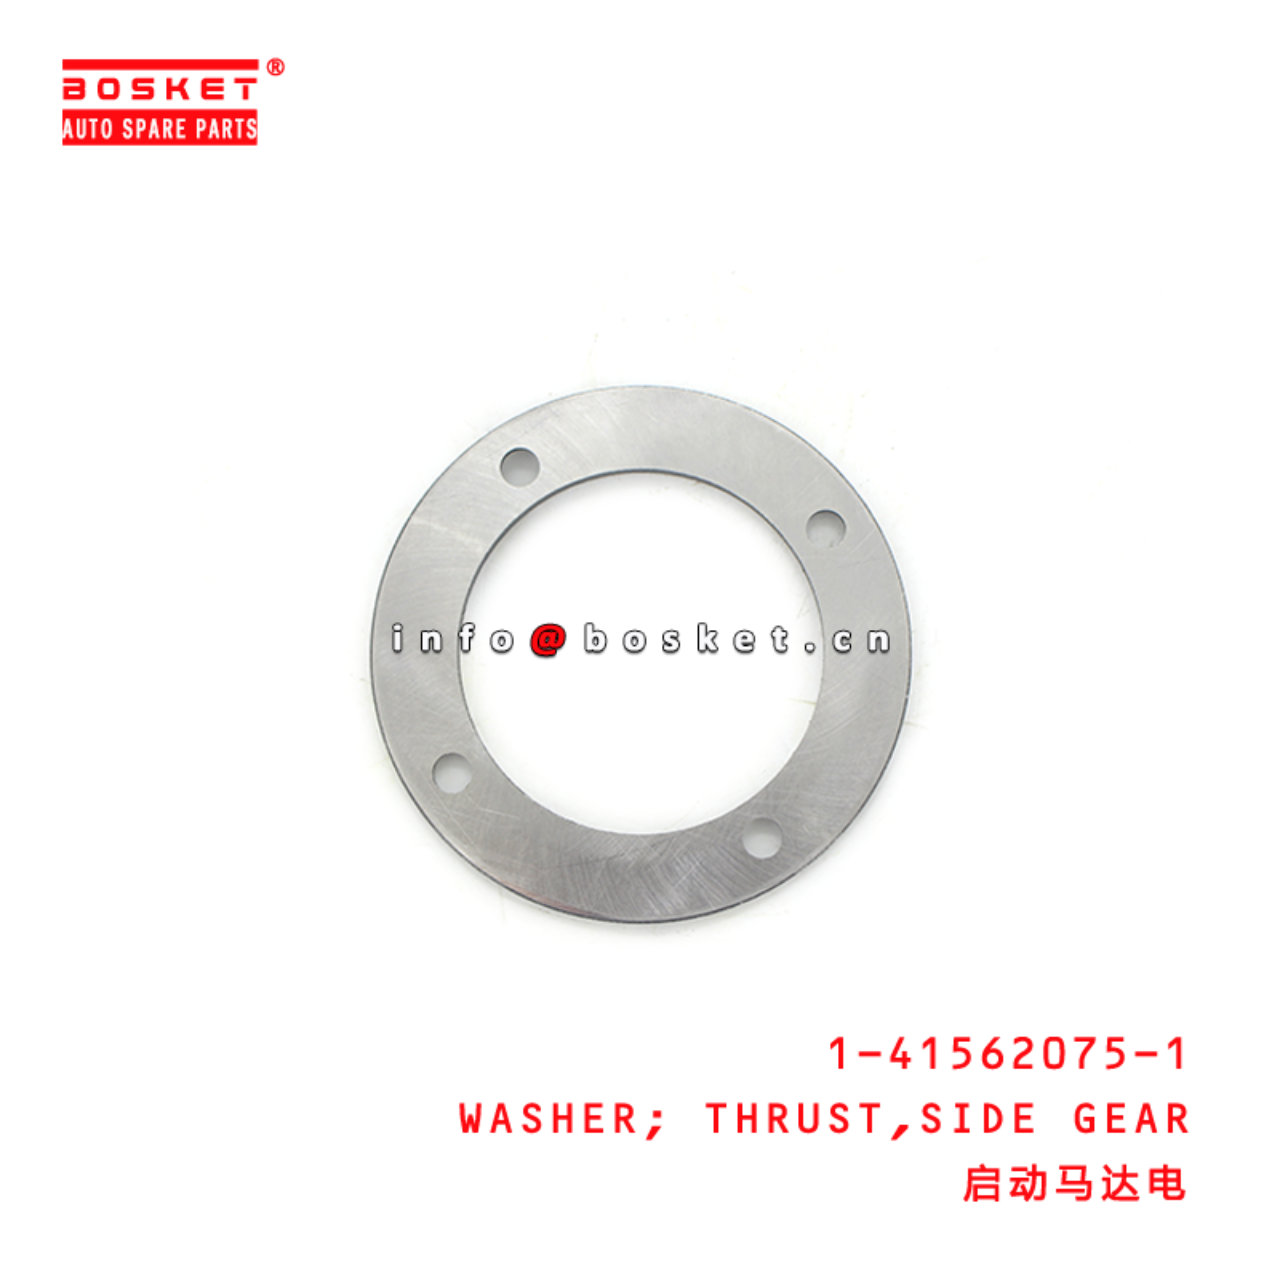 1-41562075-1 Side Gear Thrust Washer 1415620751 Suitable for ISUZU FSR